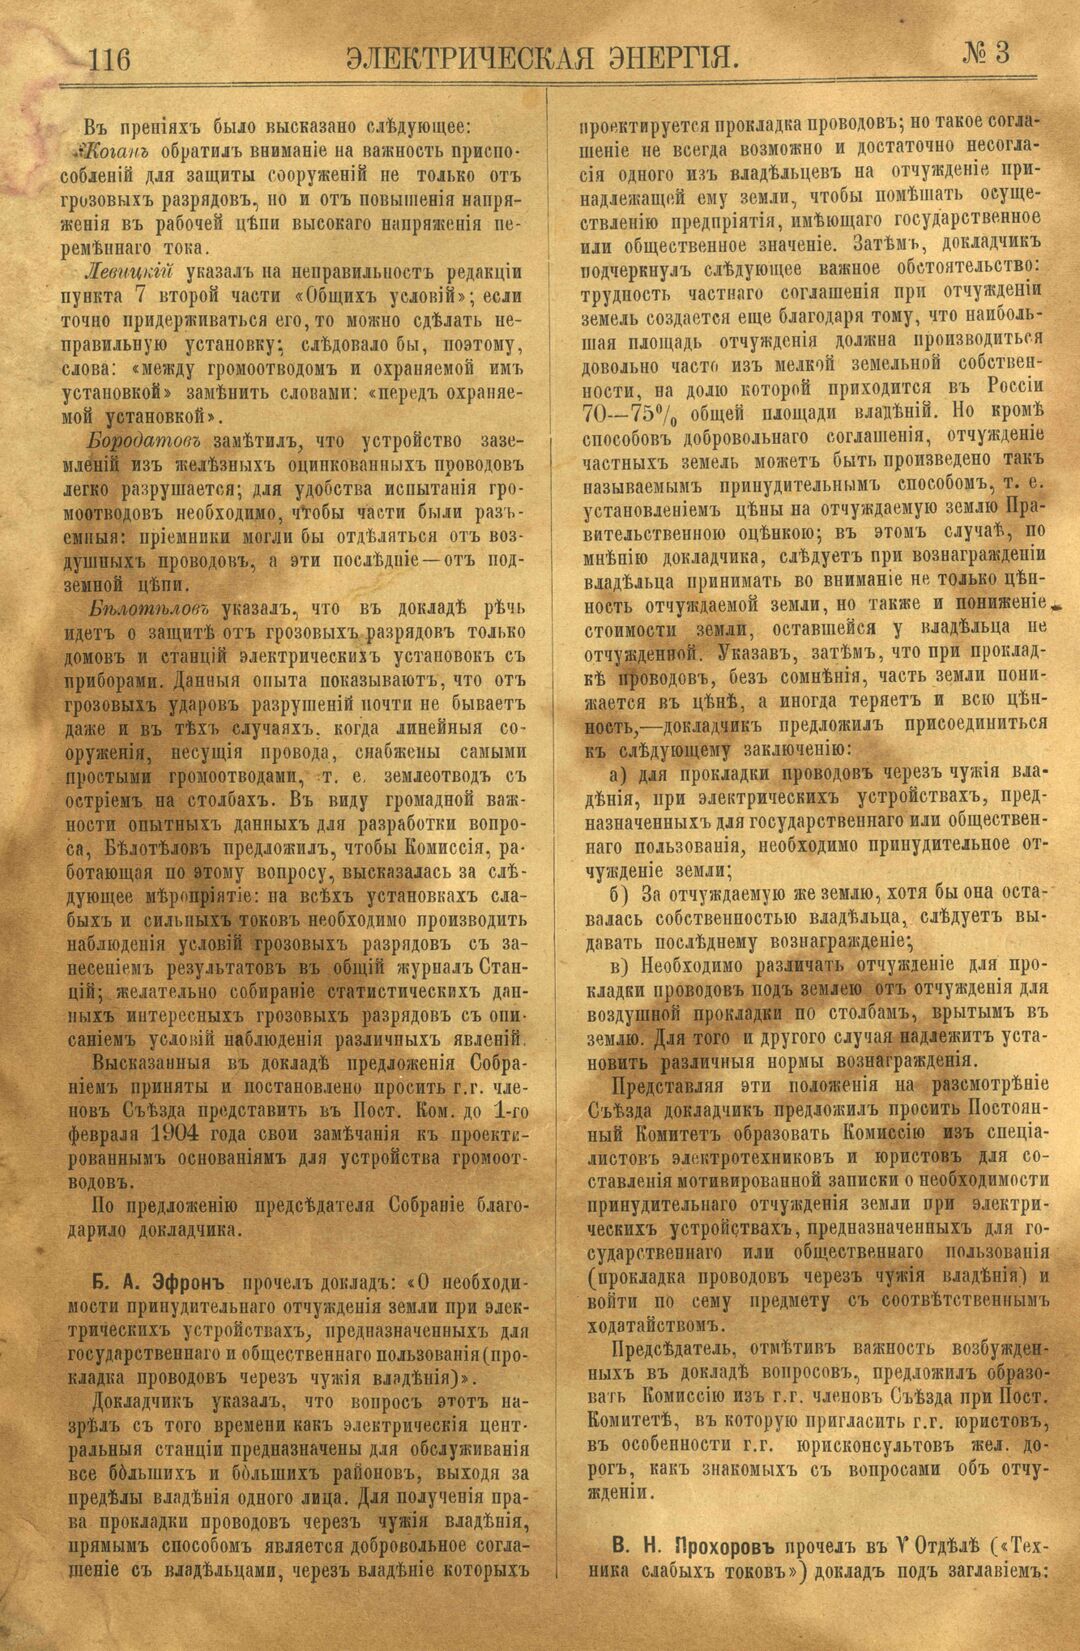 Рис. 1. Журнал Электрическая Энергiя, 3 номер, март, 1904 года, страница 116